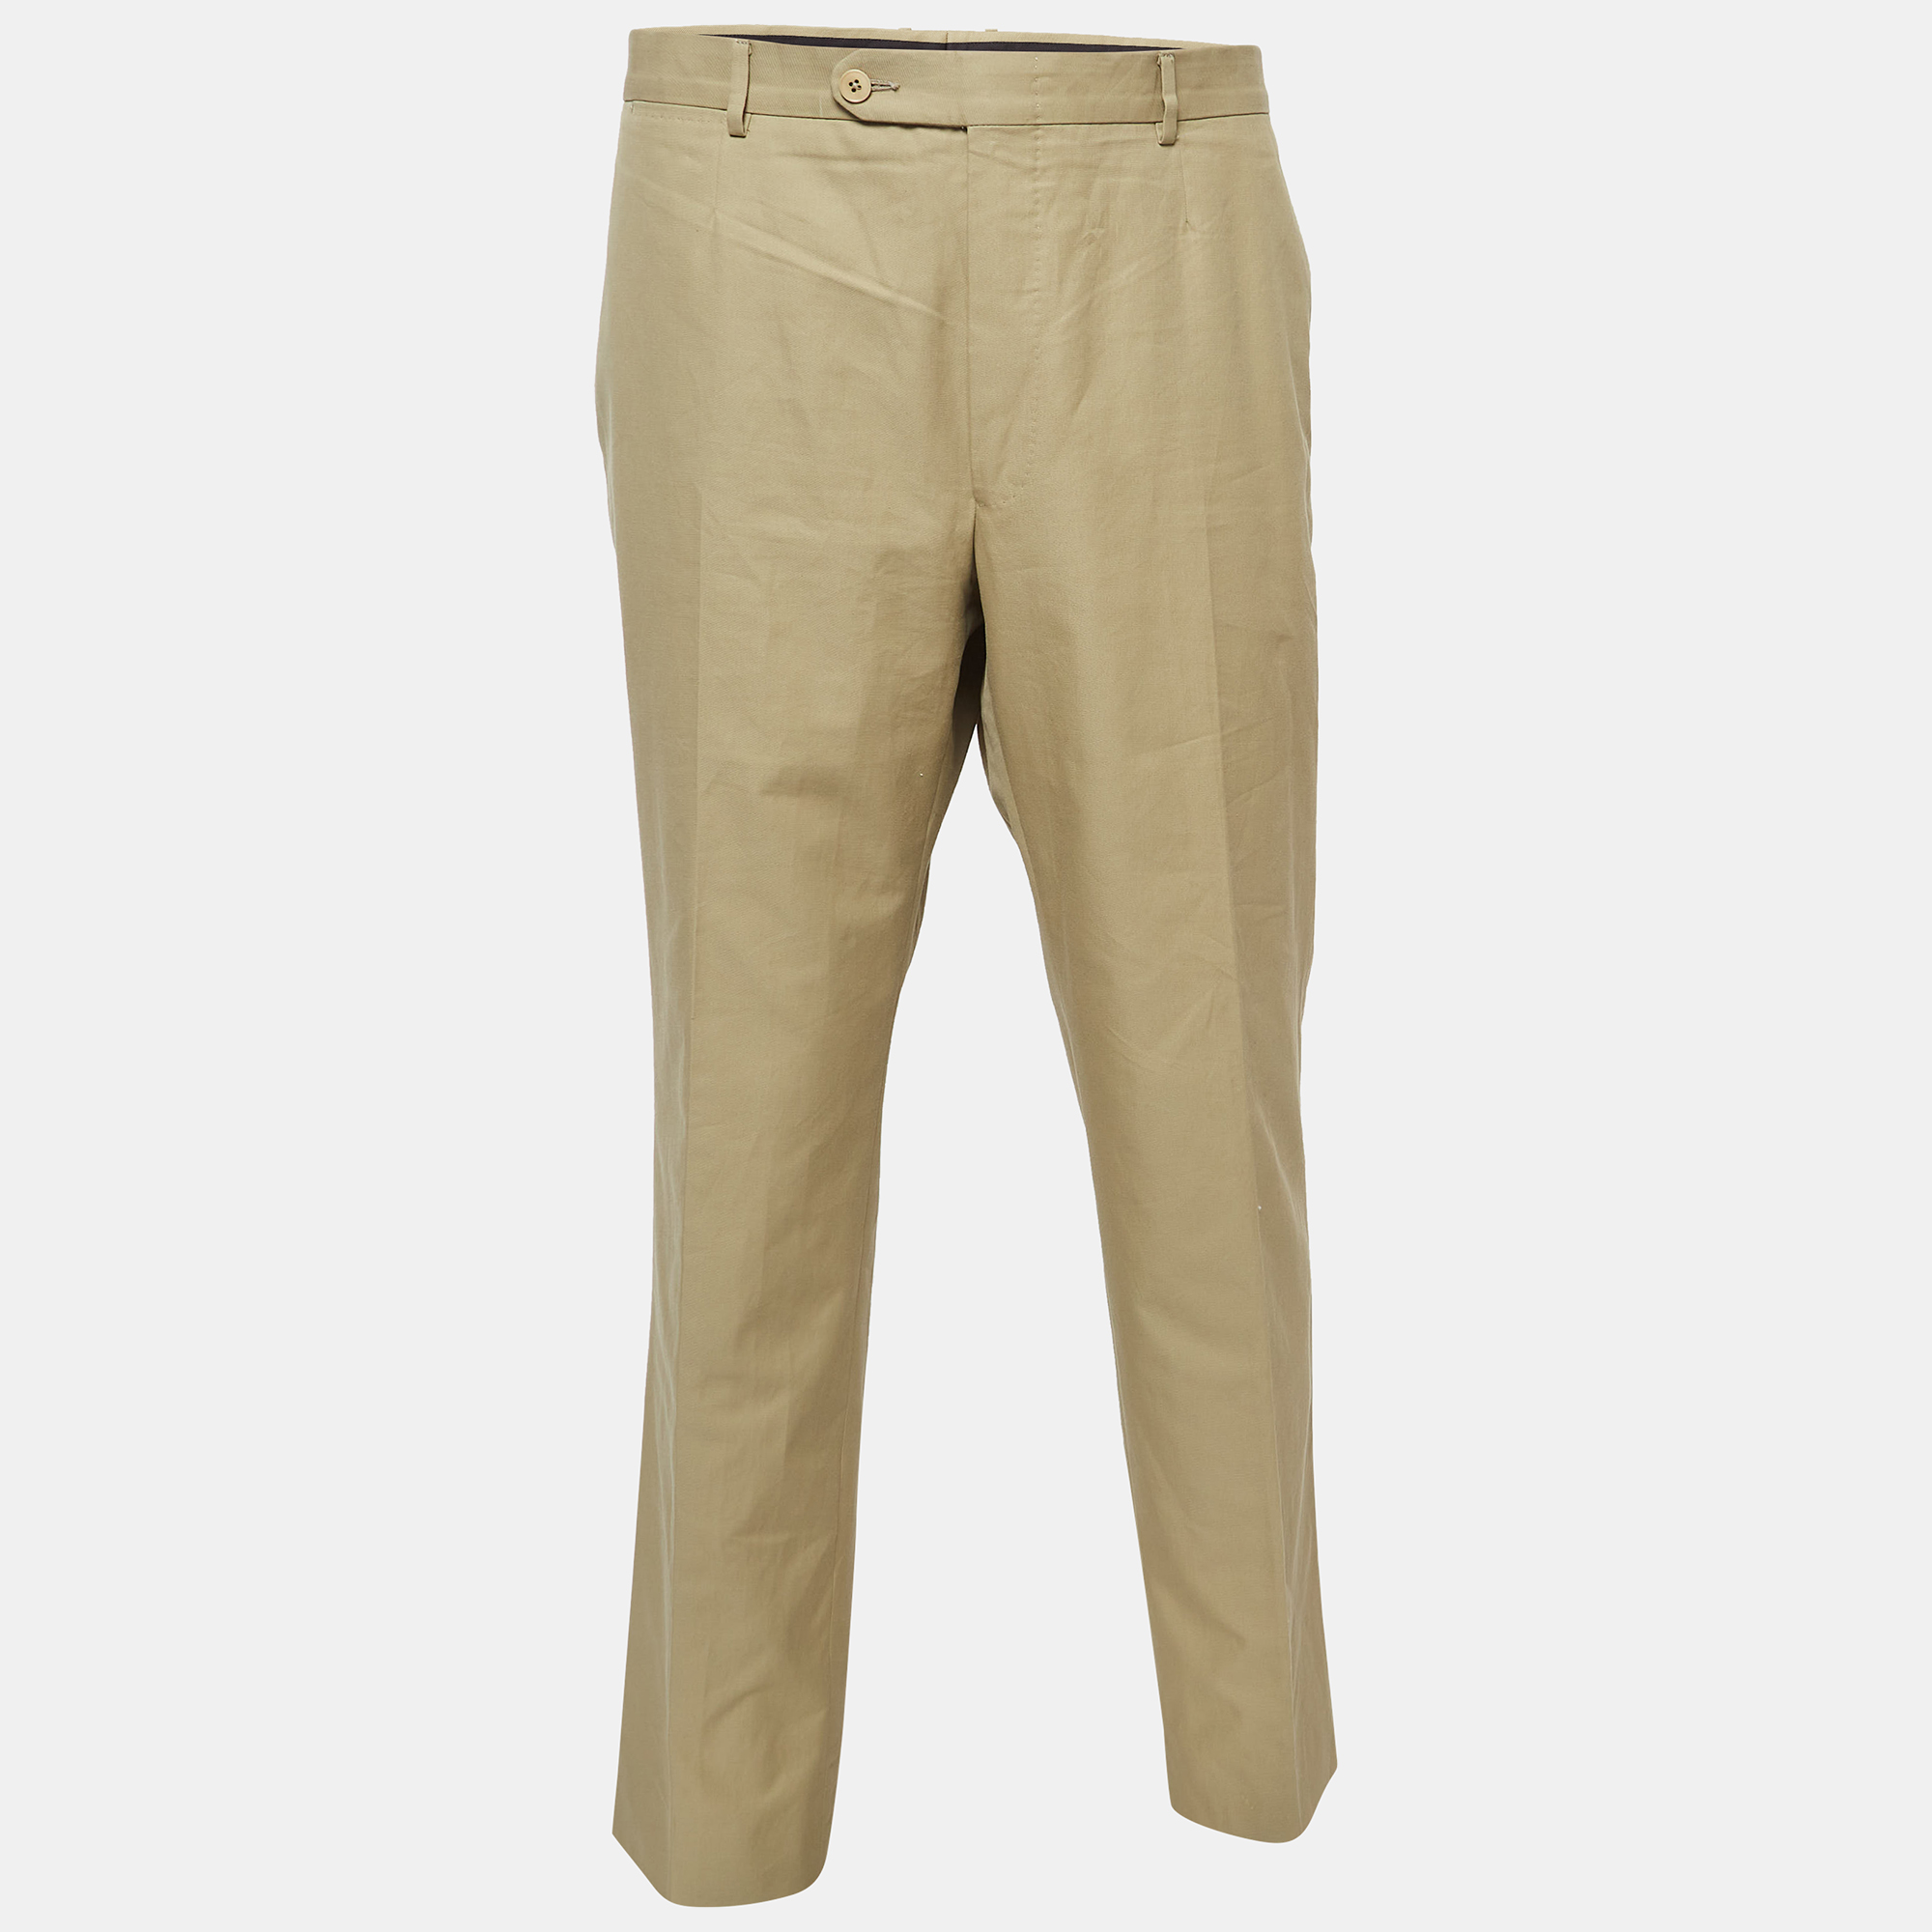 

Zegna Su Misura Light Brown Cotton Trousers